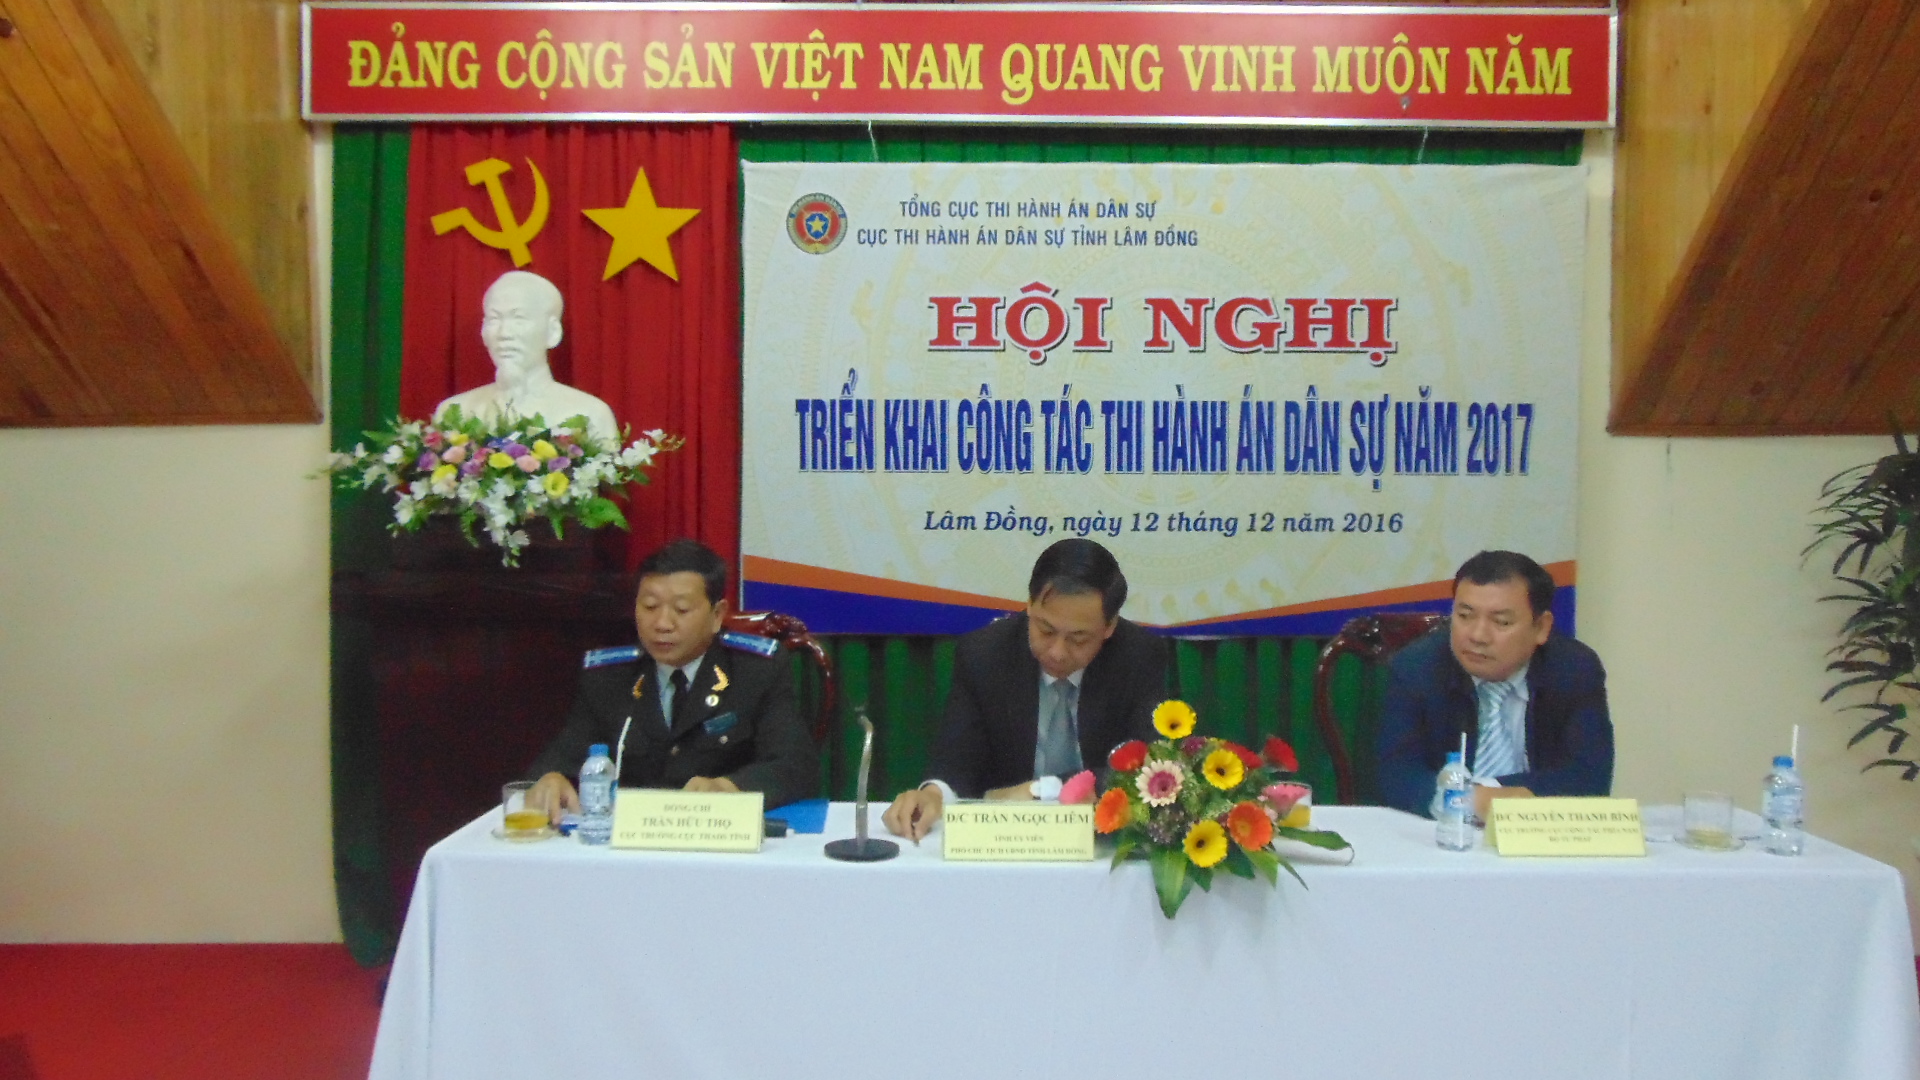 Cục Thi hành án dân sự tỉnh Lâm Đồng tổ chức Hội nghị triển khai công tác thi hành án dân sự năm 2017